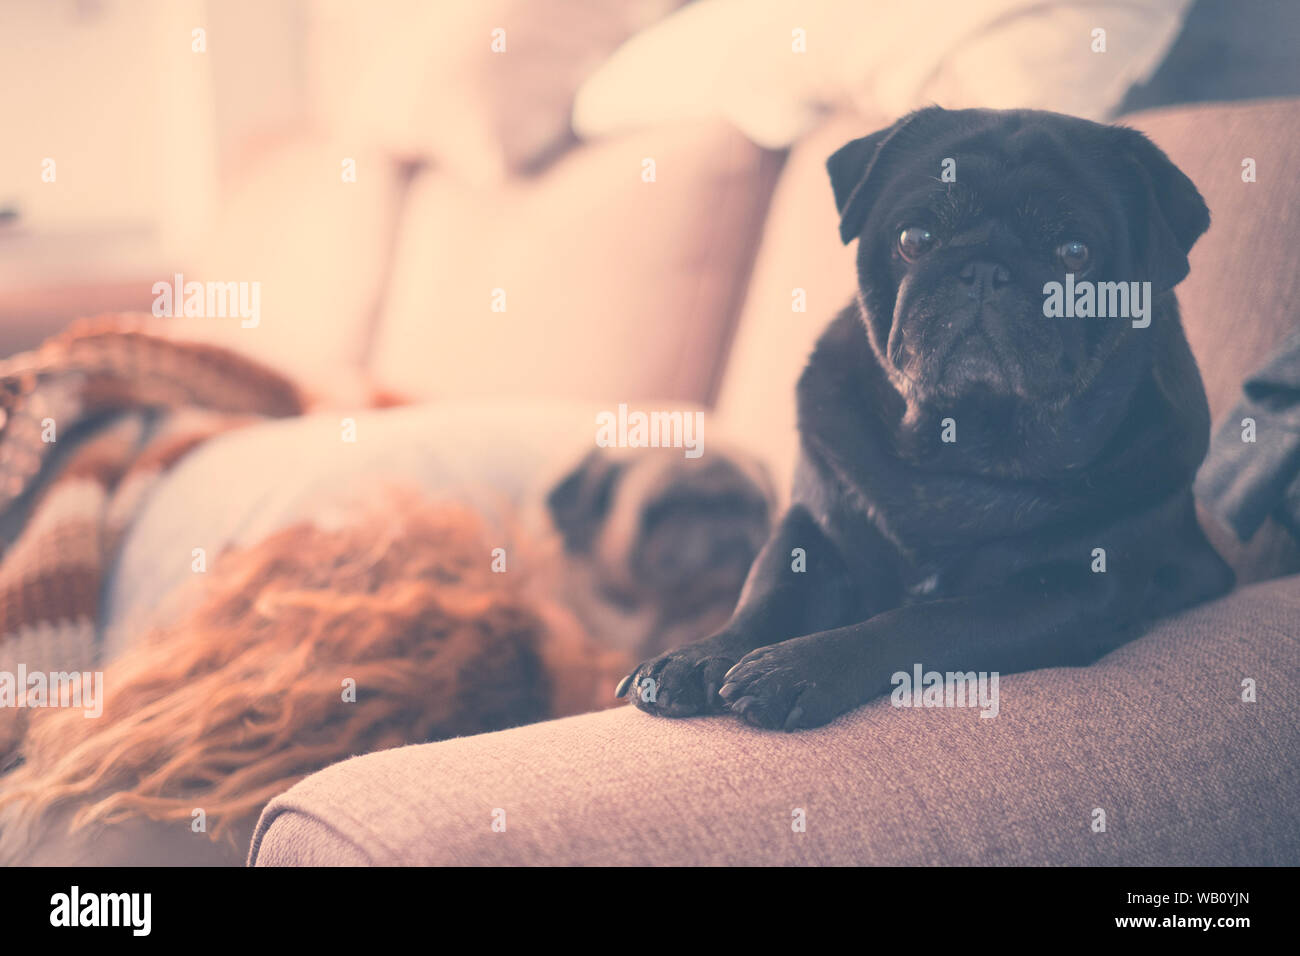 Hund auf dem Sofa sitzen nach dem Aufwachen an der Kamera mit einer Frau und einem anderen weißen Hund schlafen in der backgroung am Morgen - Hunde- und Stockfoto